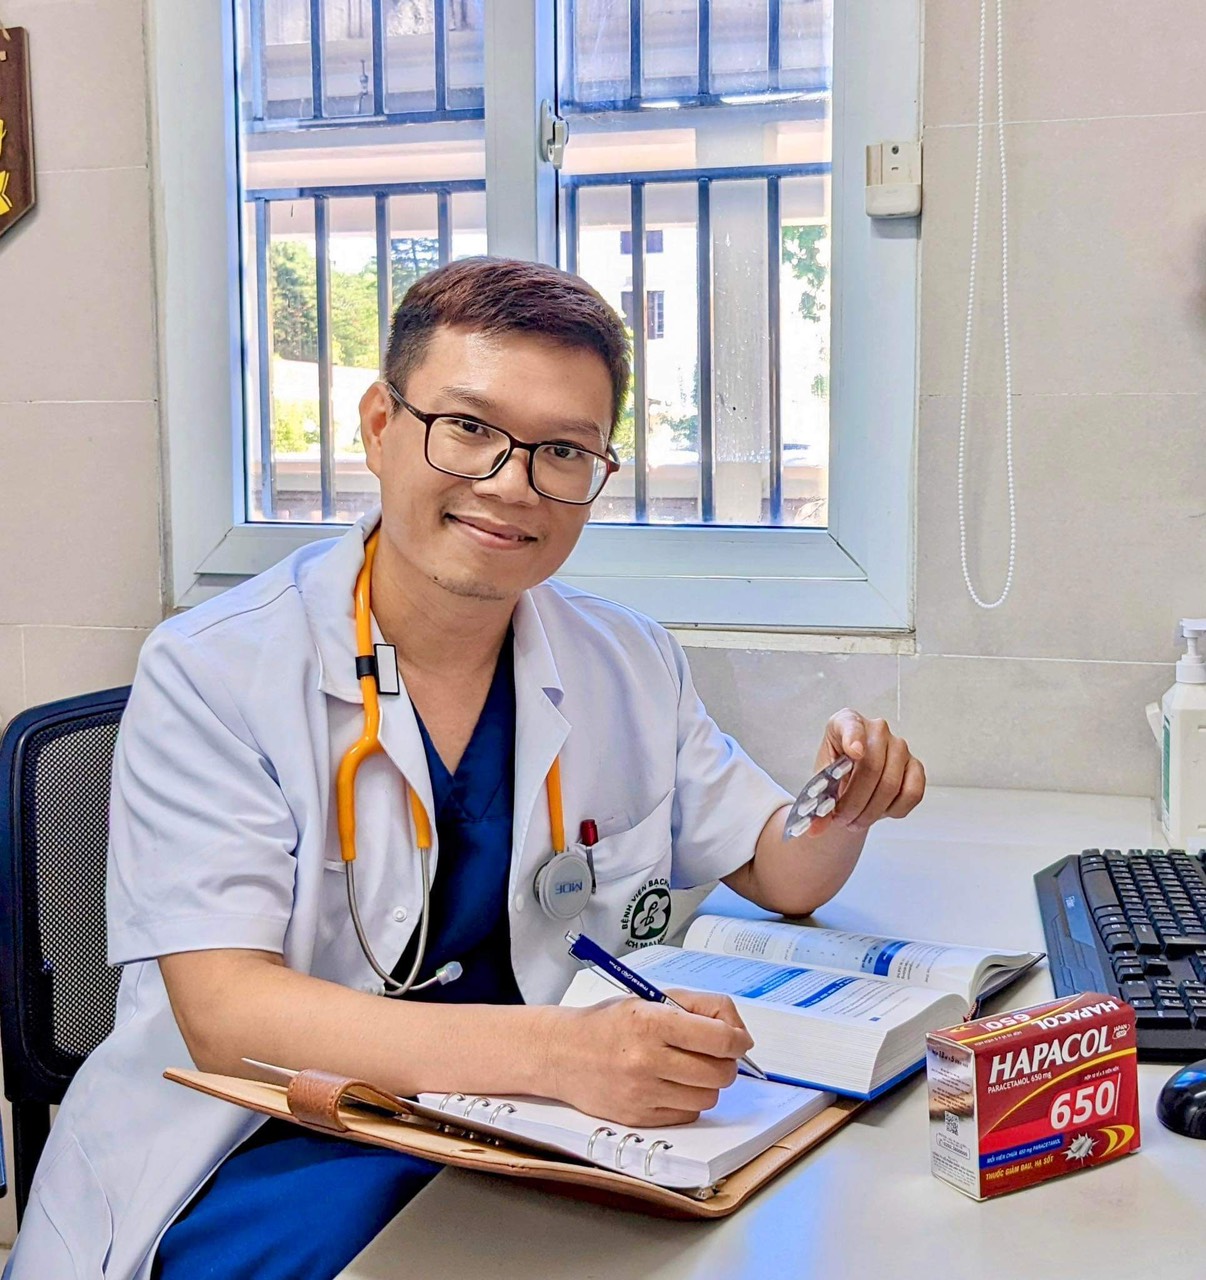 20 năm Hapacol đồng hành cùng y bác sĩ chăm sóc sức khoẻ người Việt - 2